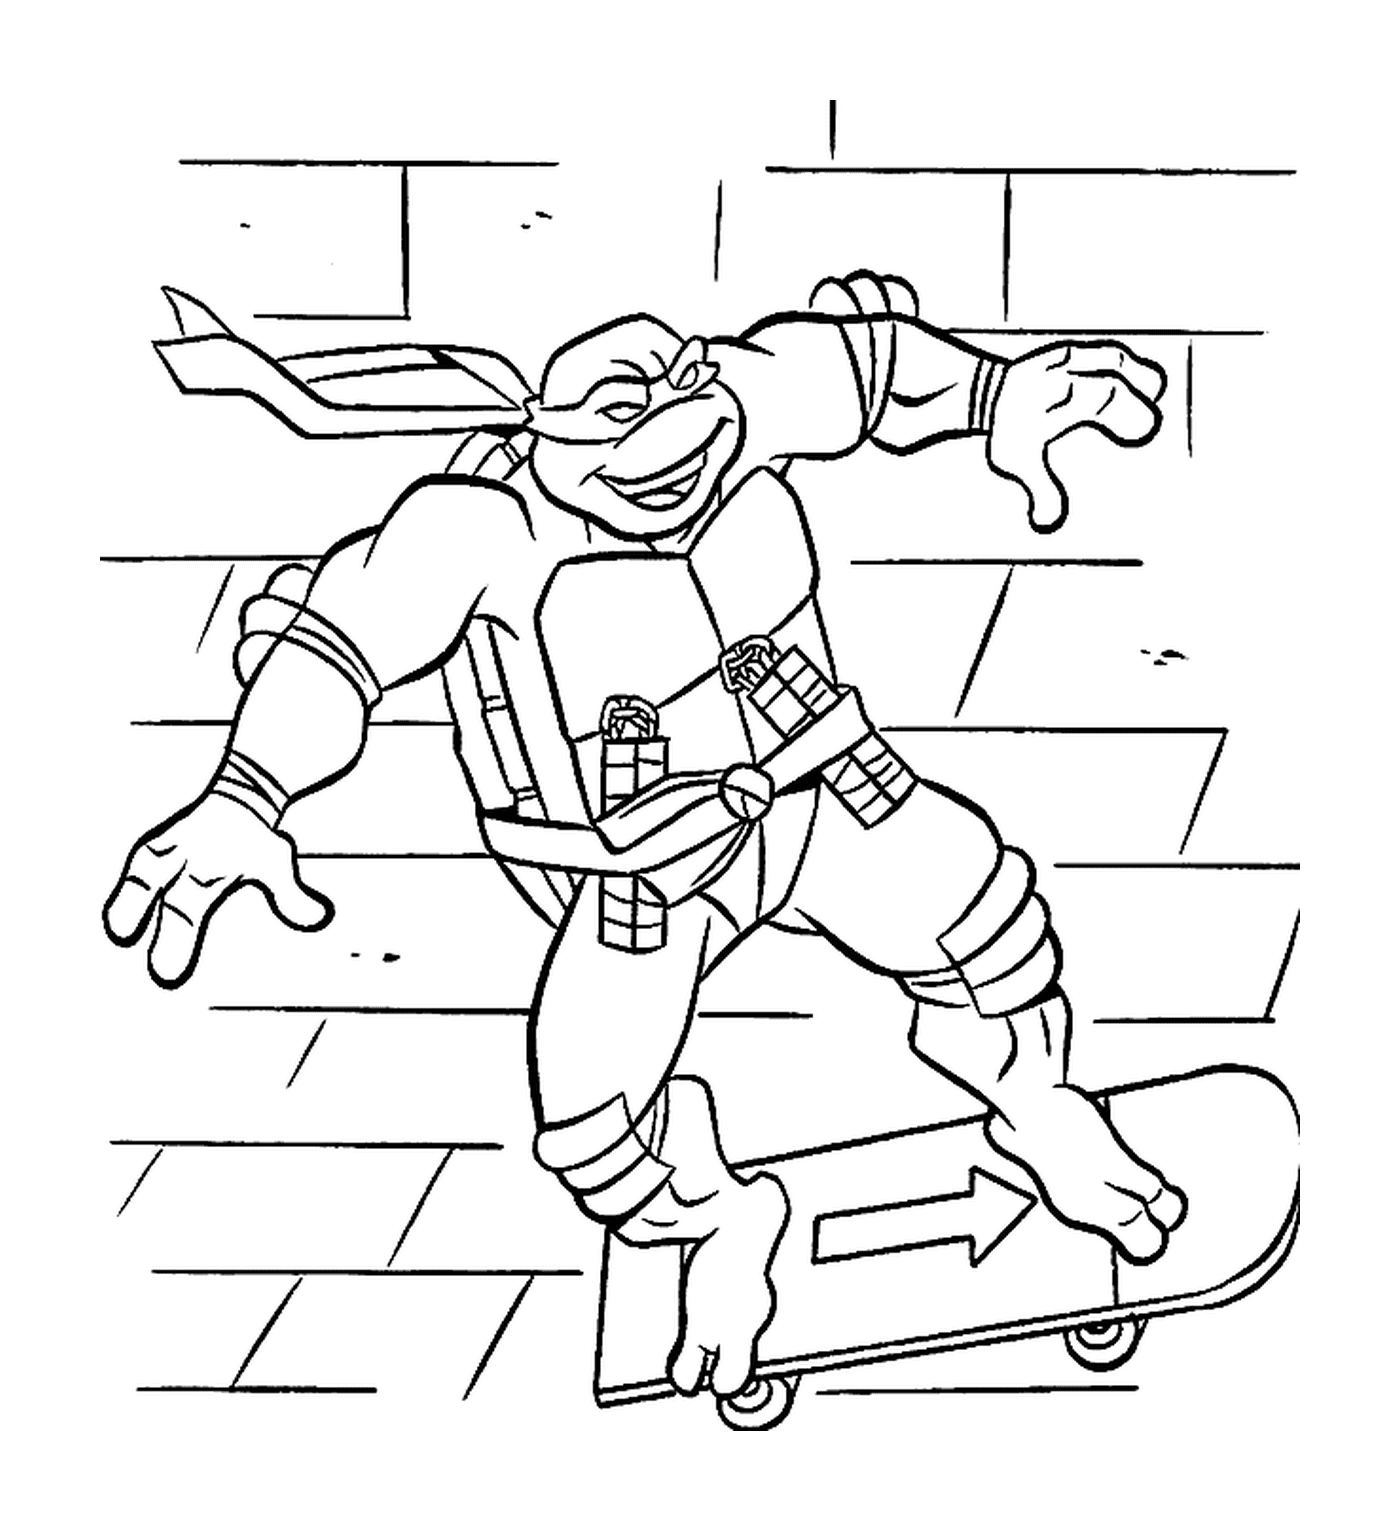  Tartaruga ninja em um skate 